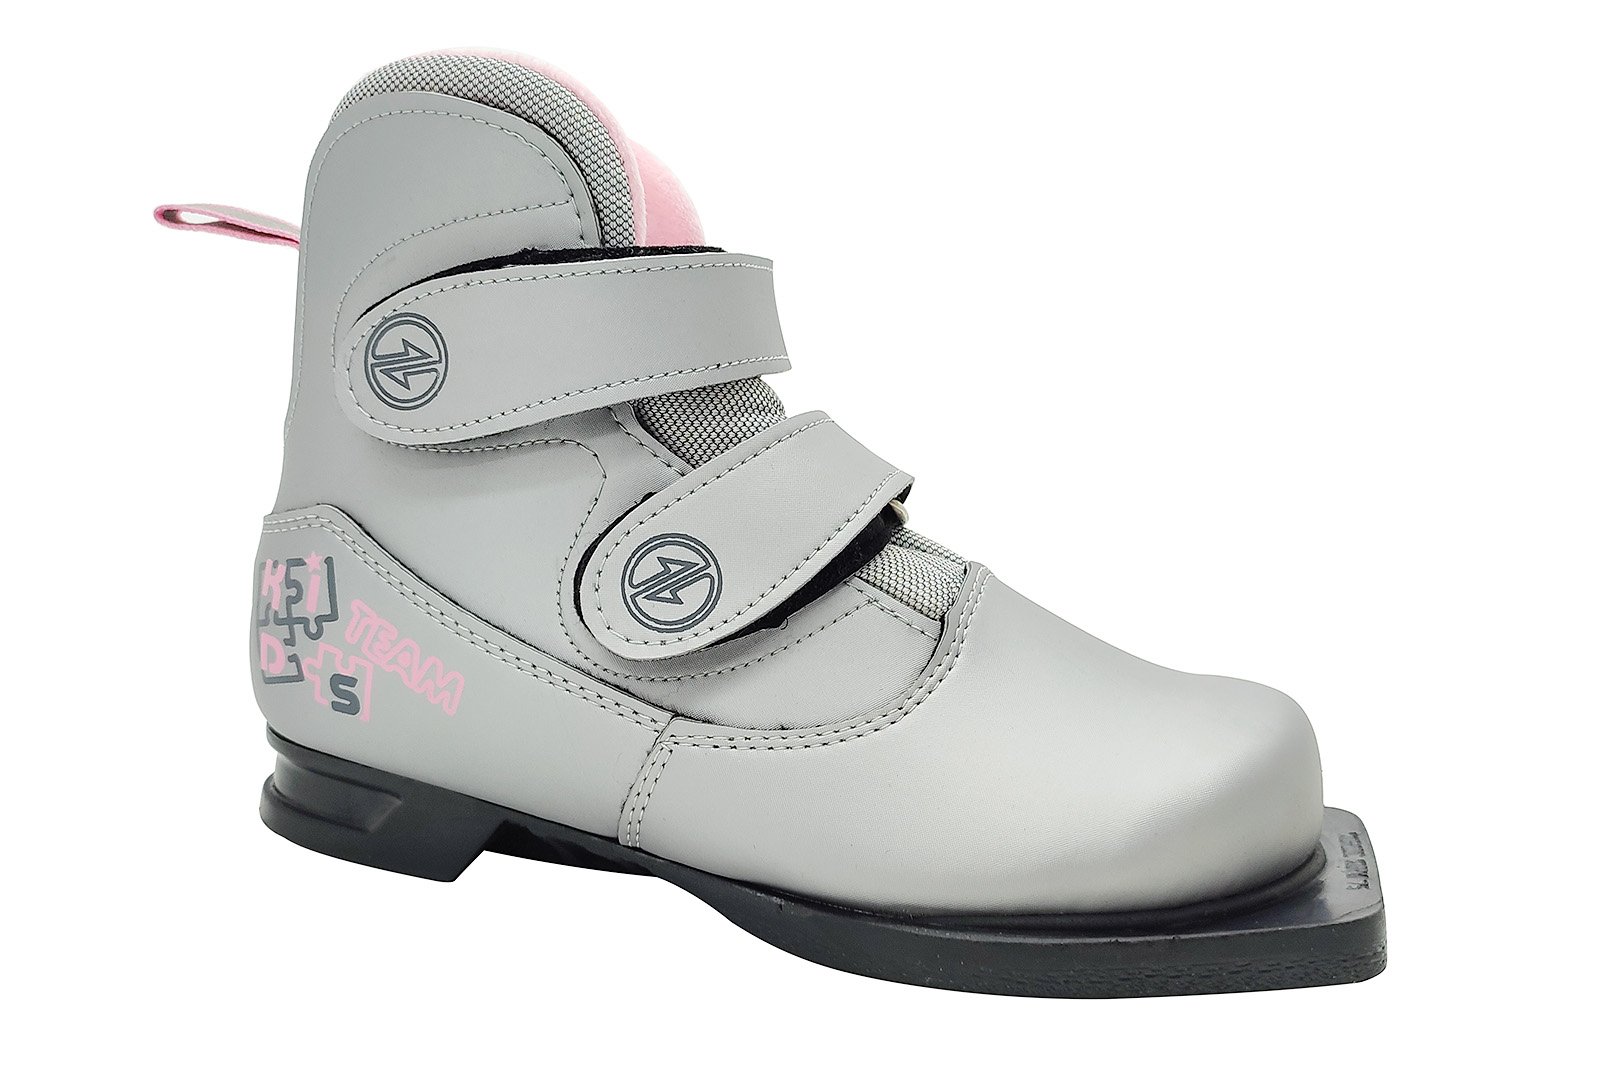 Ботинки лыжные 75 мм COMFORT KIDS (на липучке) серебро-розовый 1600_1067